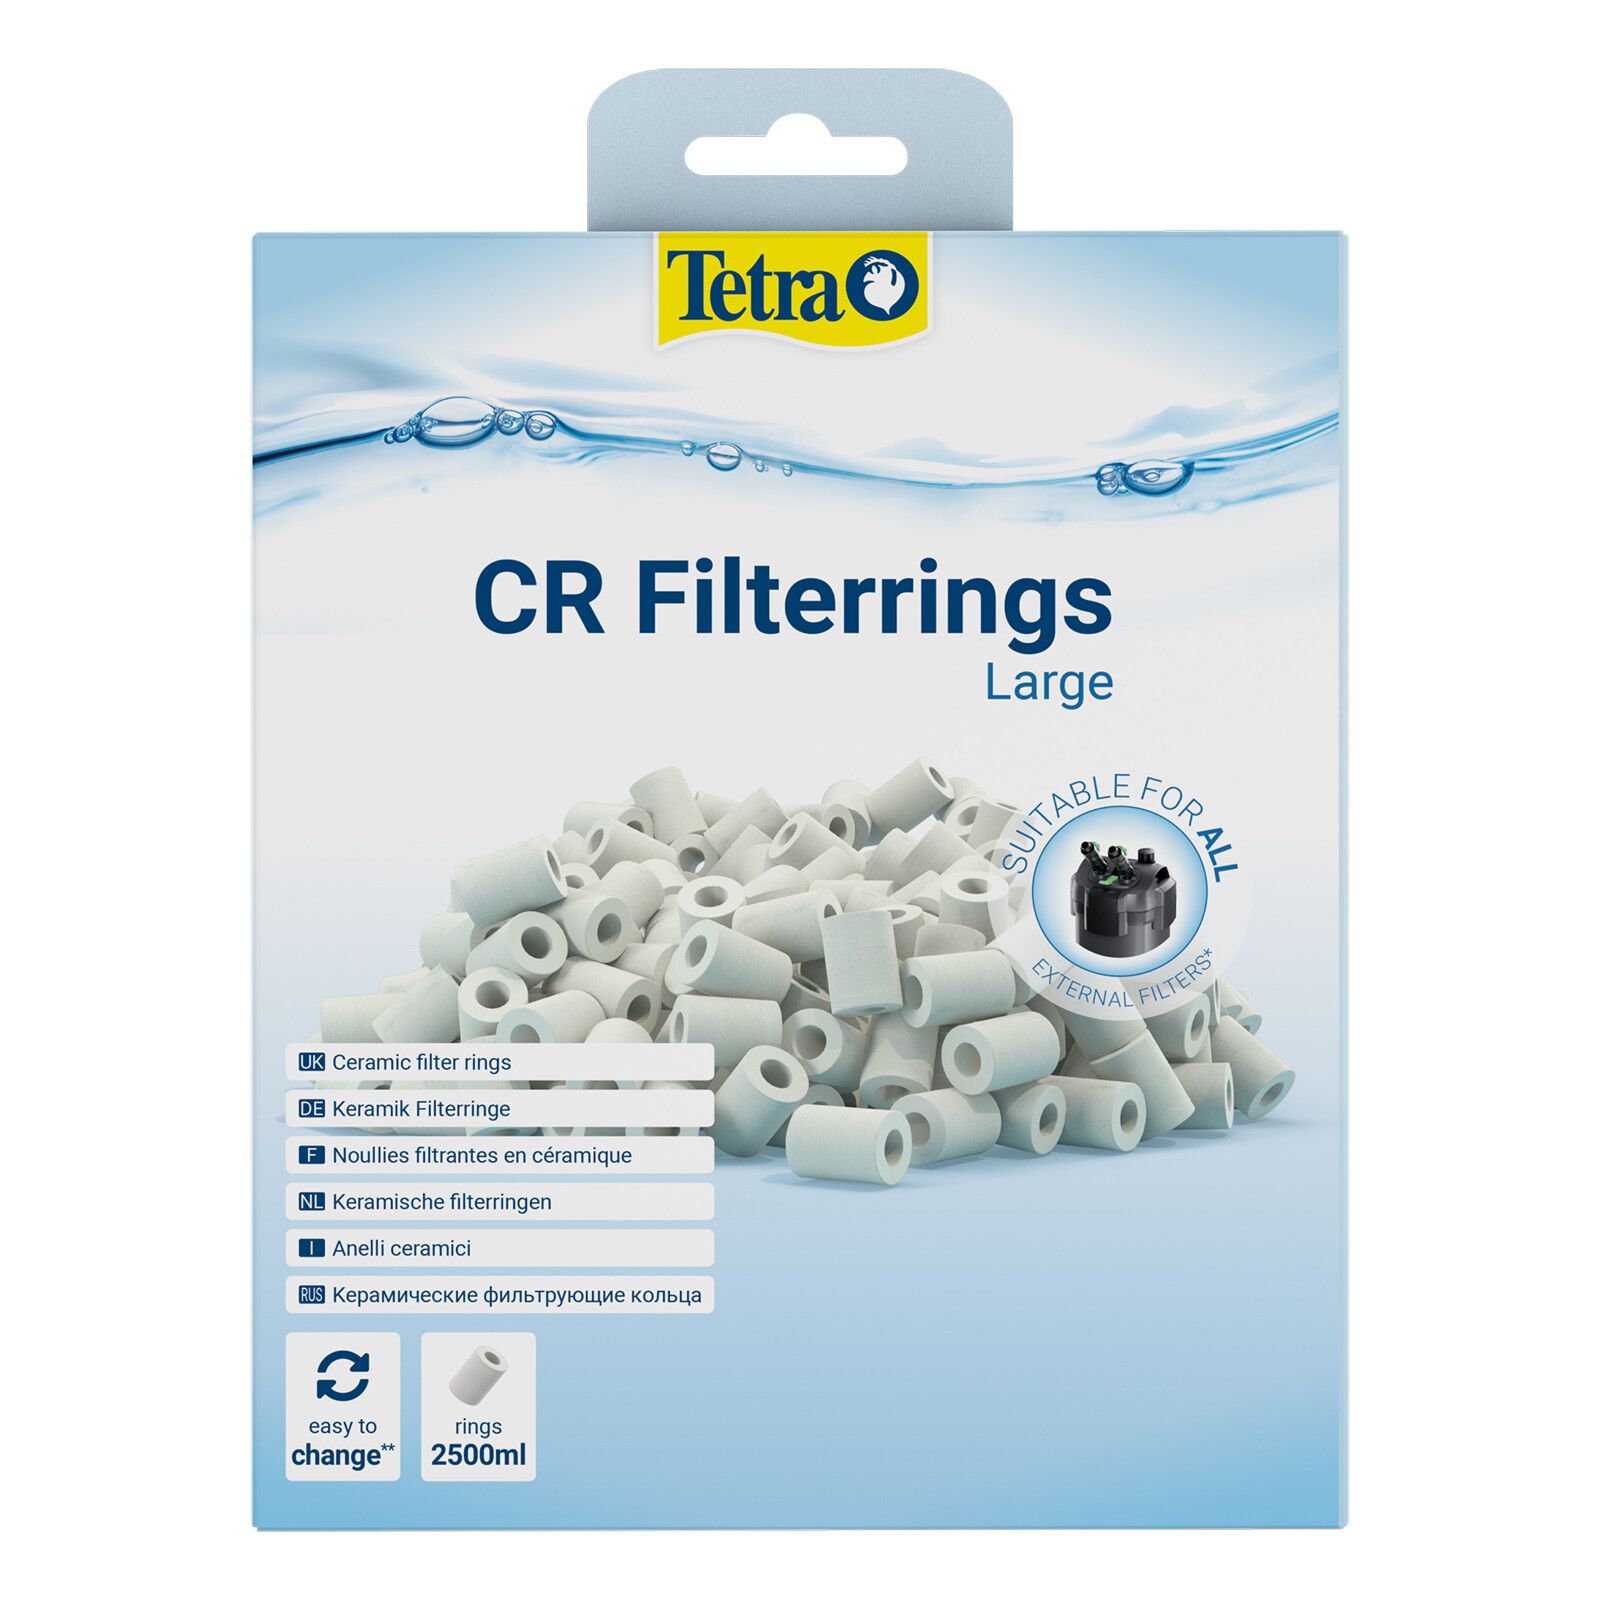 Tetra - CR Filterrings